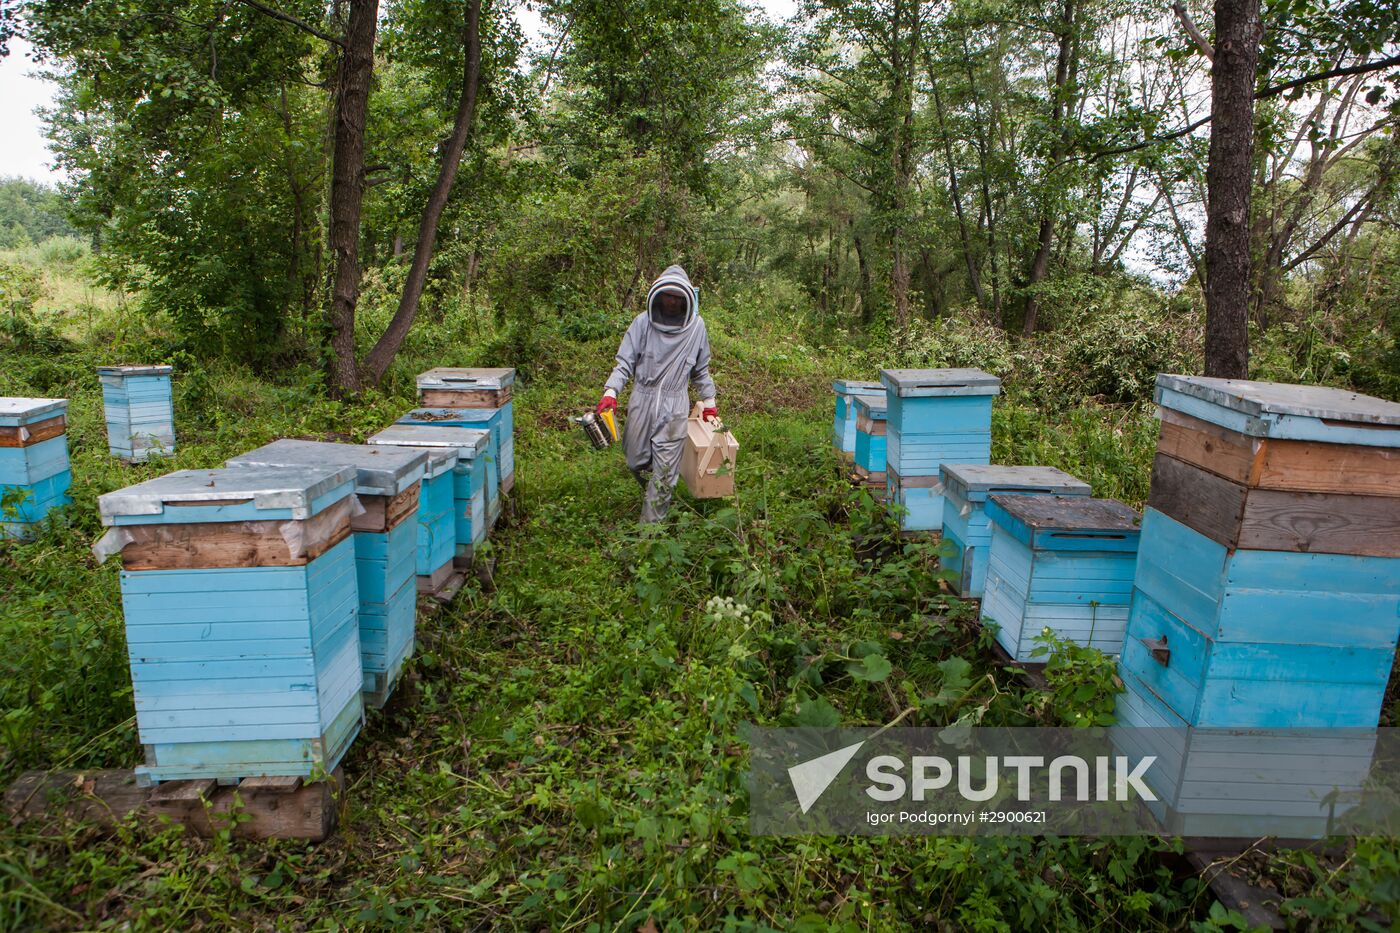 An apiary in the Ruazan Region